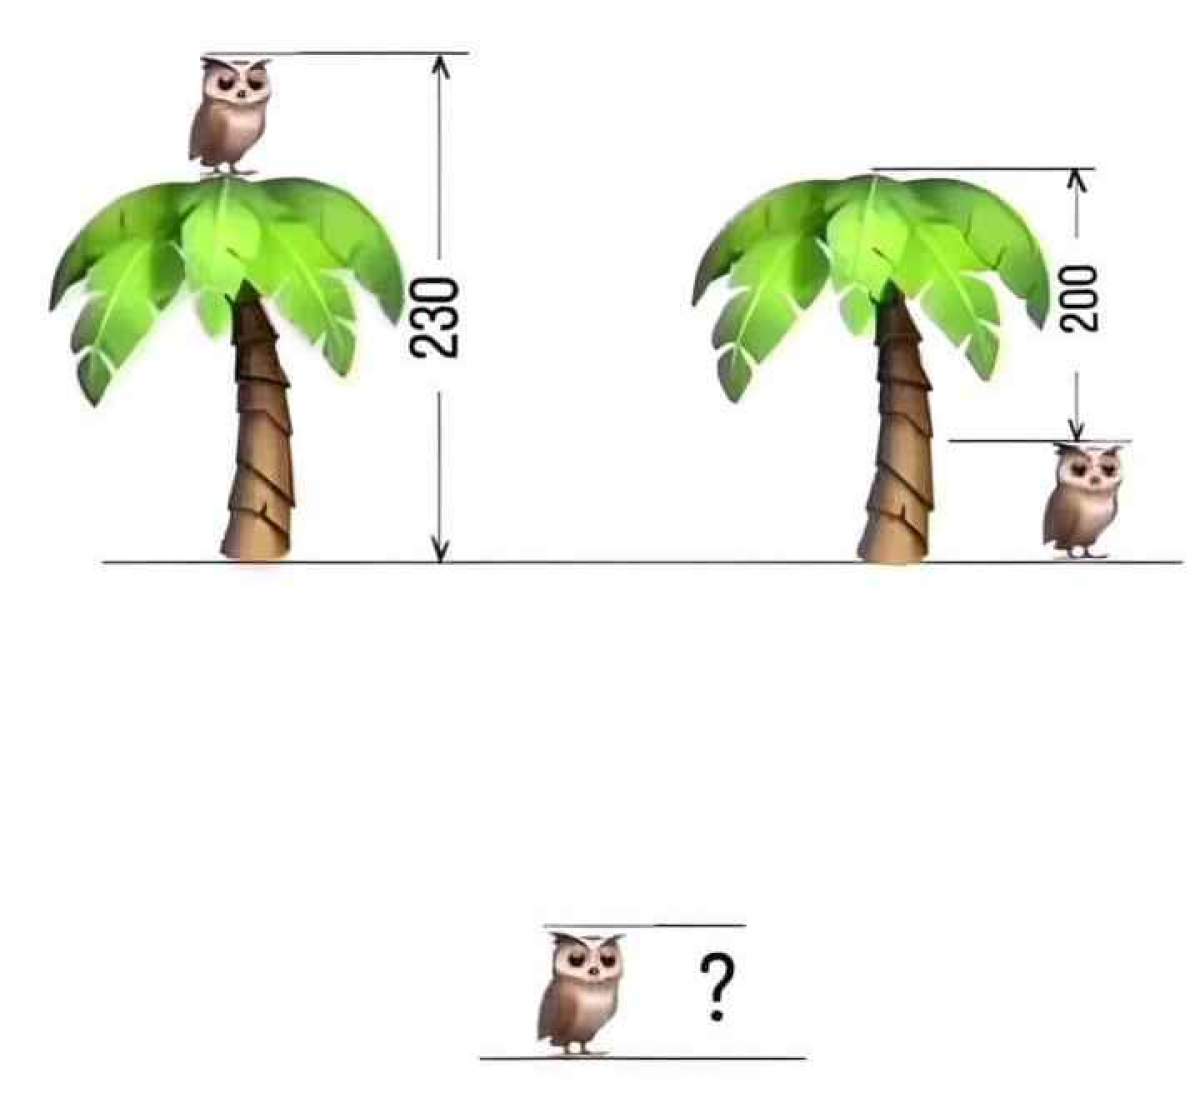 Test IQ! Doar geniile pot afla înălțimea bufniței și a copacului din imagine în 10 secunde / FOTO